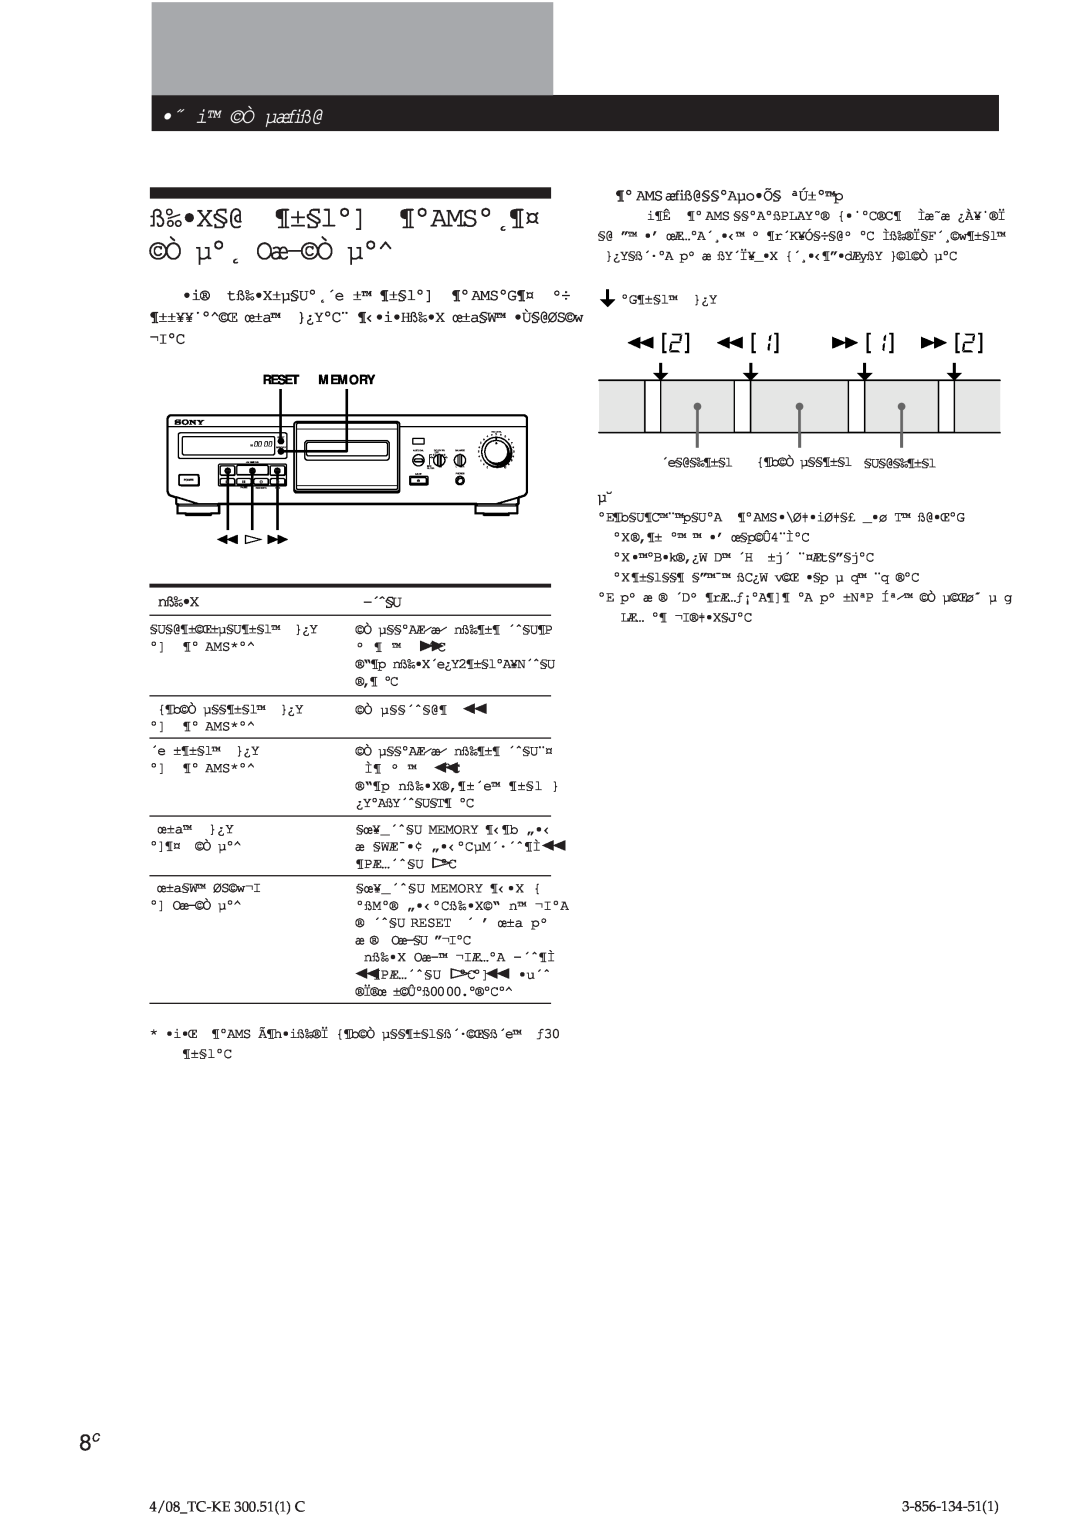 Sony TC-KE300 operating instructions ß‰ X§@ ¶±§l ¶AMS˛¶¤ Ò µ˛ Oæ-Òµ, ˝ i Ò µæﬁß@ 